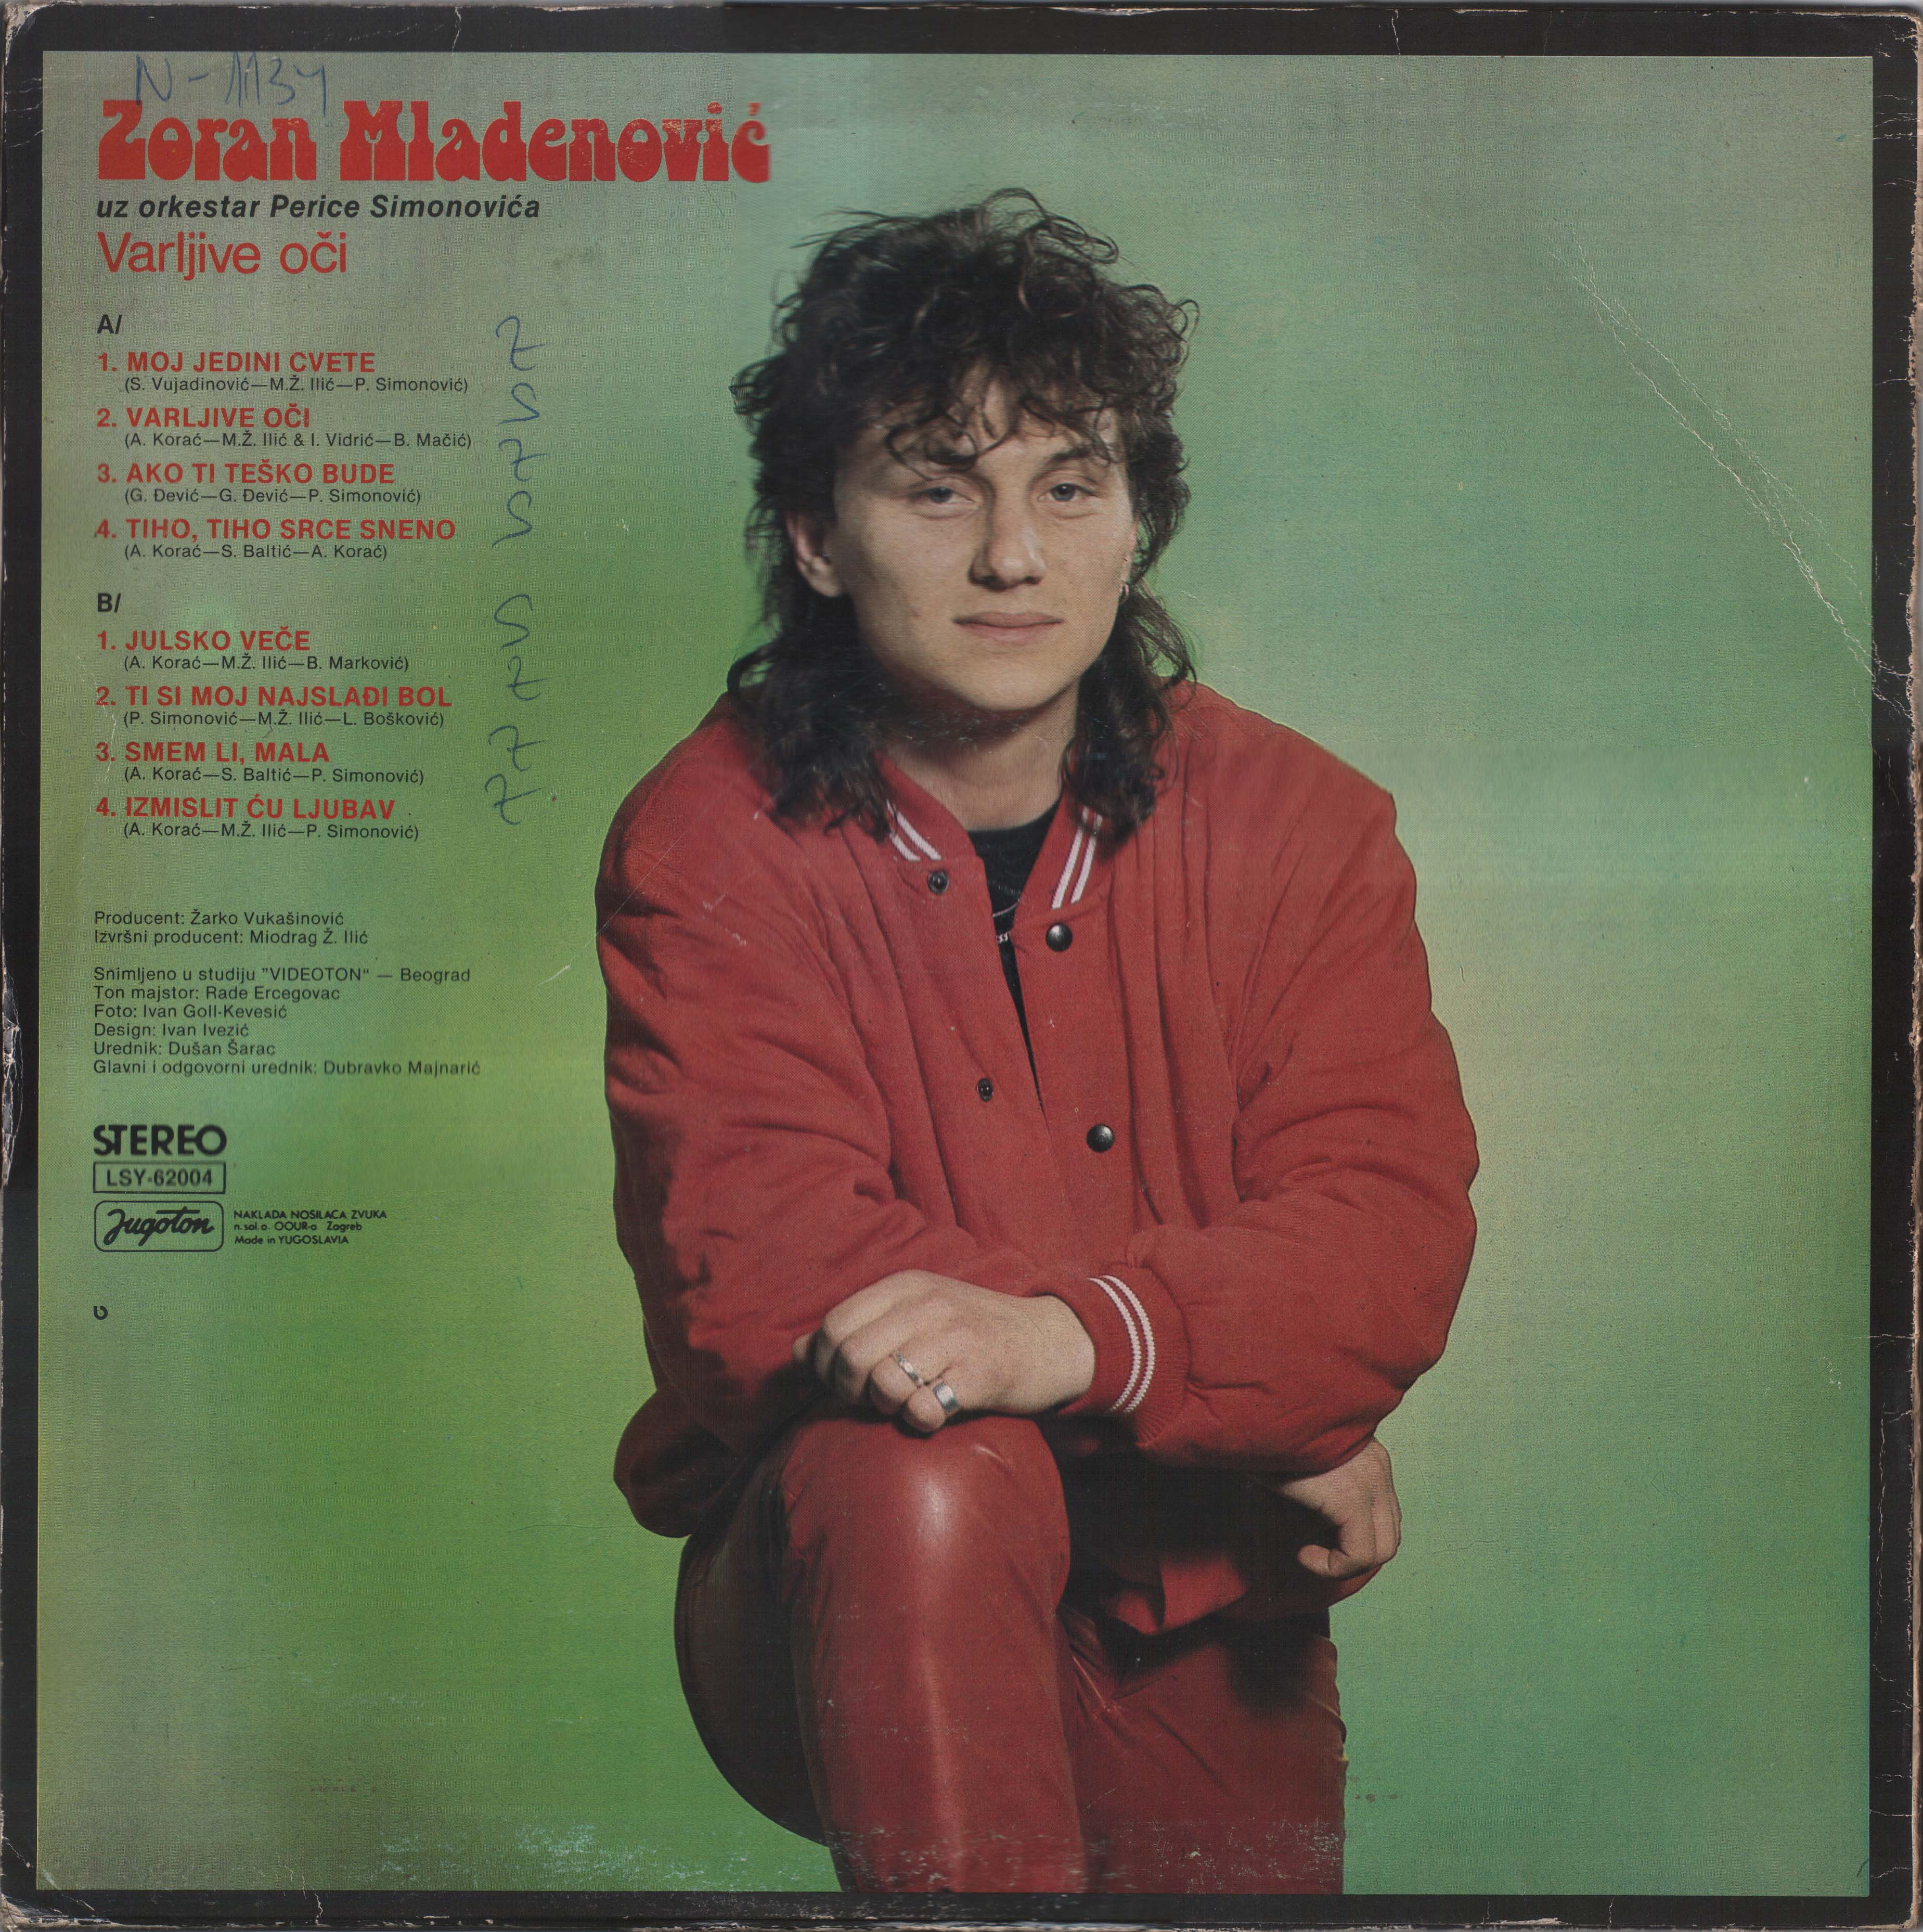 Zoran Mladenovic 1985 Z